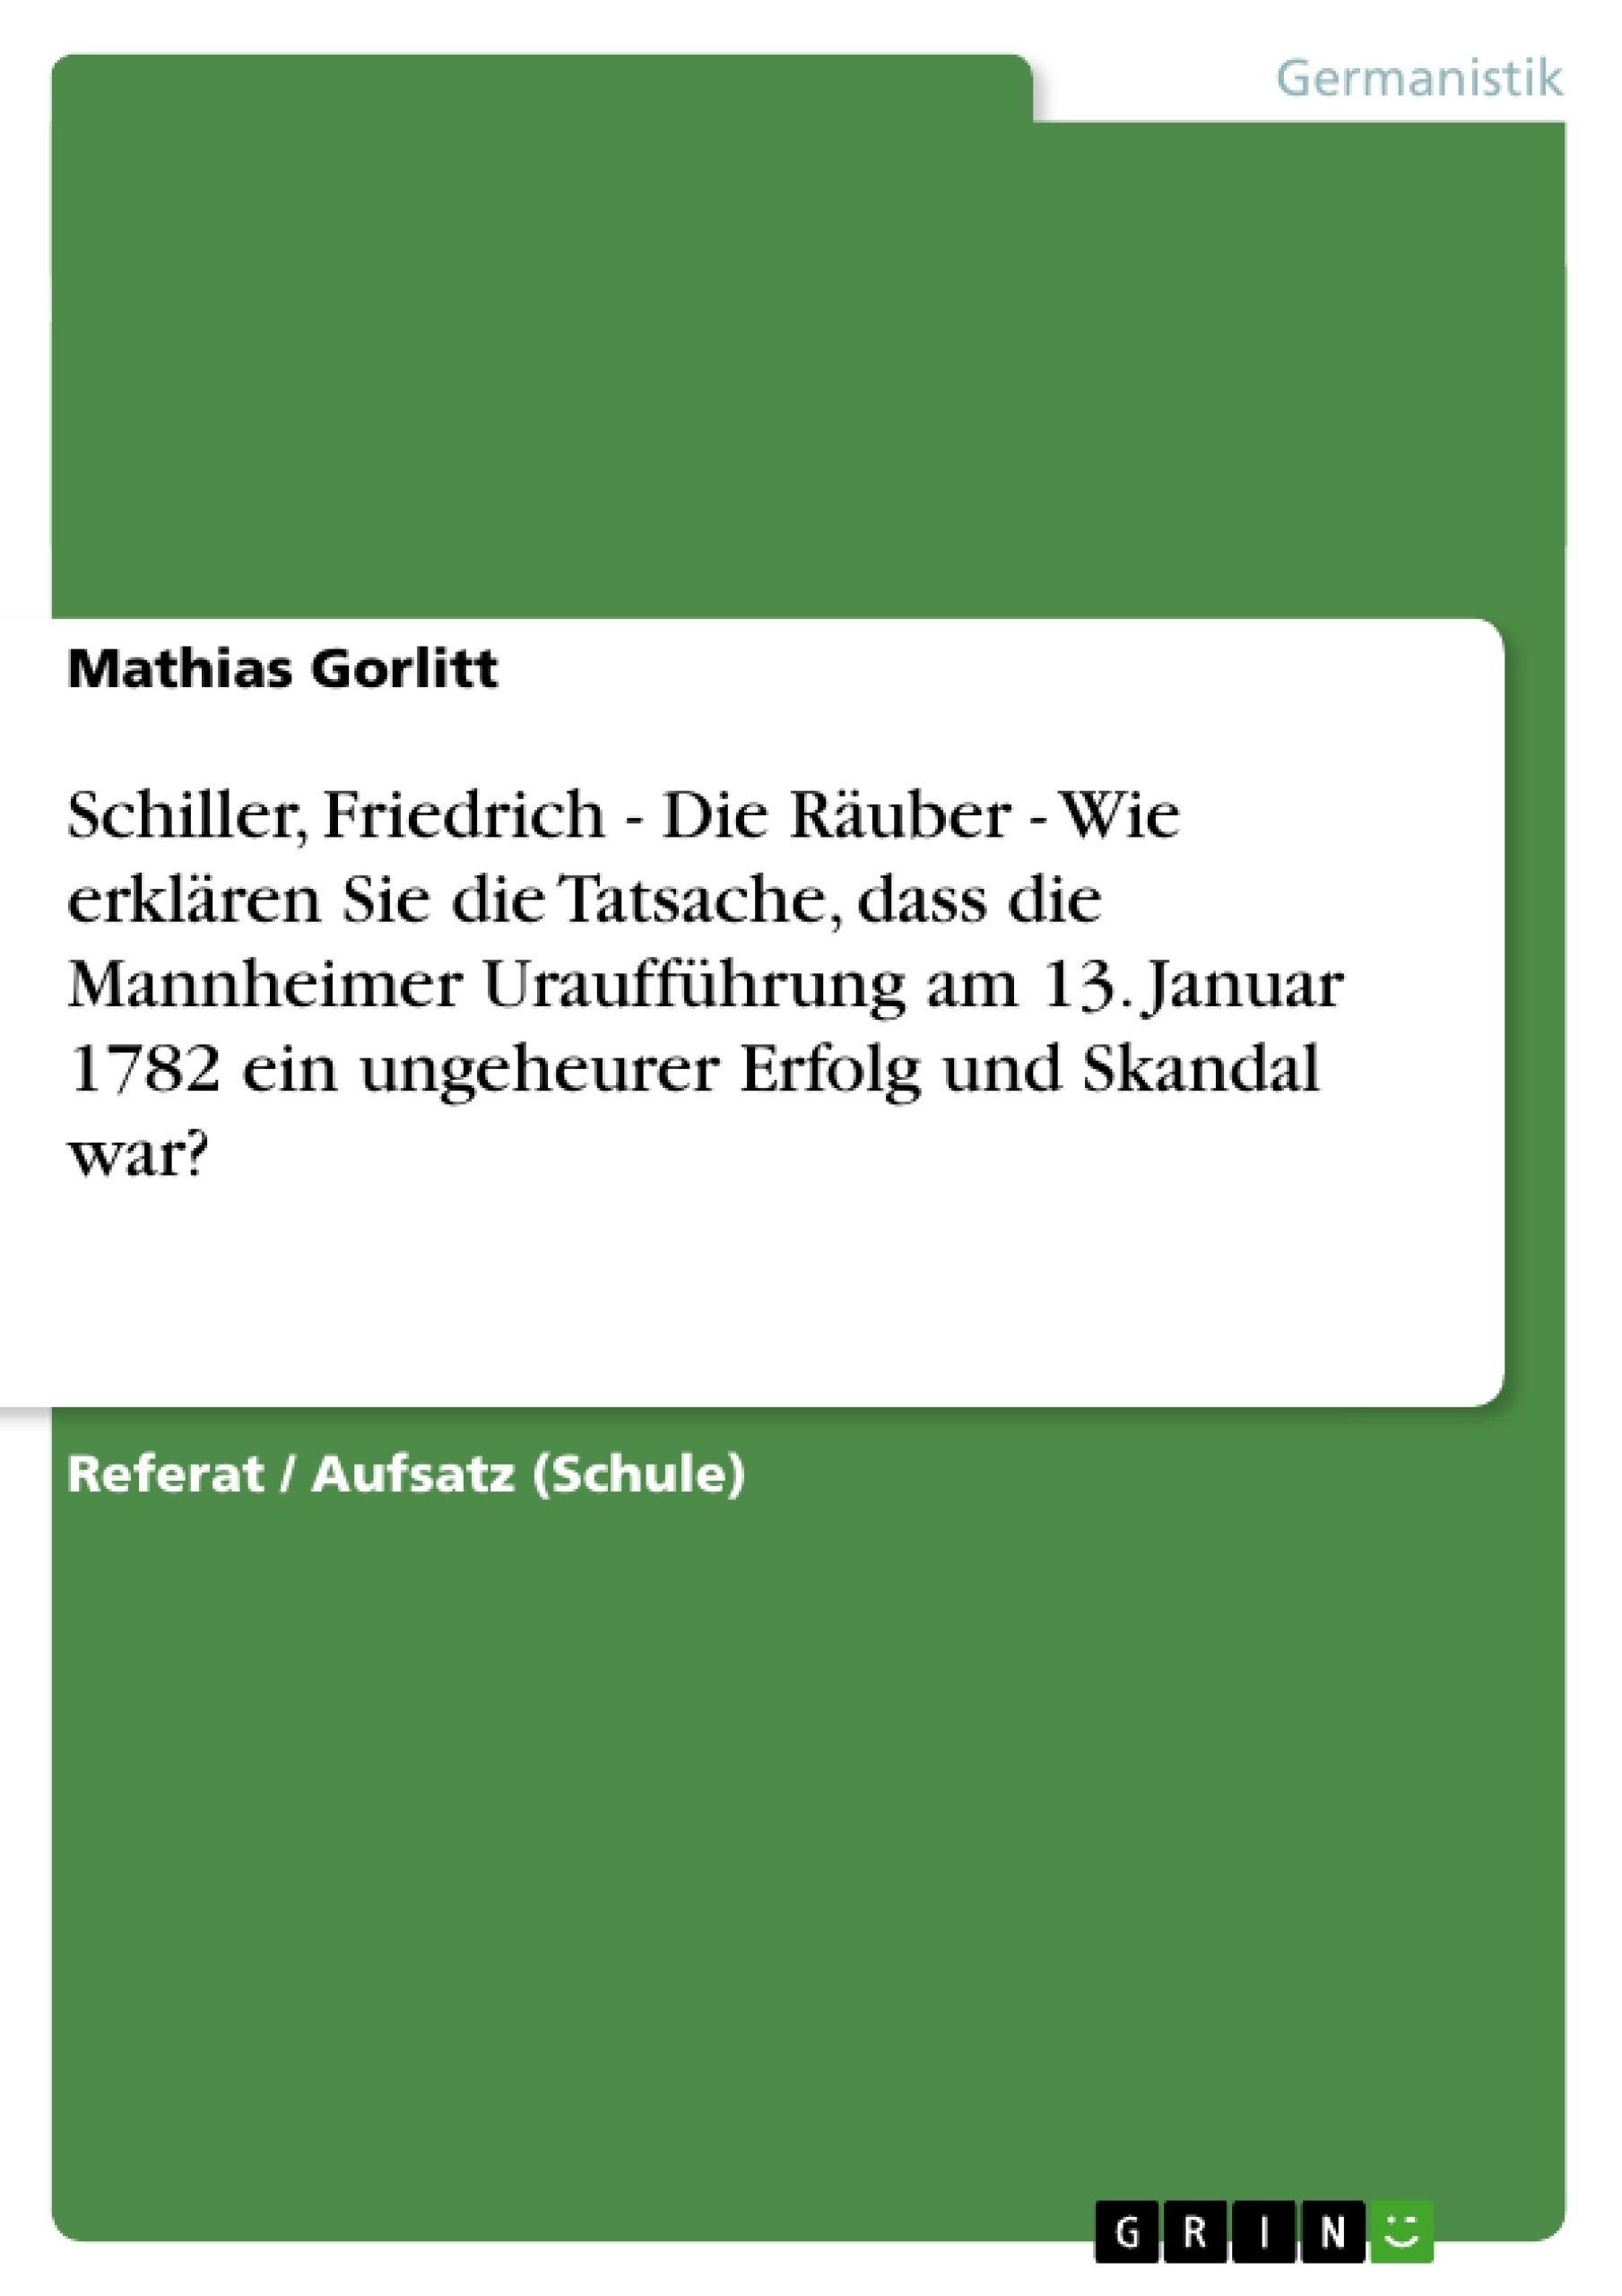 Title: Schiller, Friedrich - Die Räuber - Wie erklären Sie die Tatsache, dass die Mannheimer Uraufführung am 13. Januar 1782 ein ungeheurer Erfolg und Skandal war?